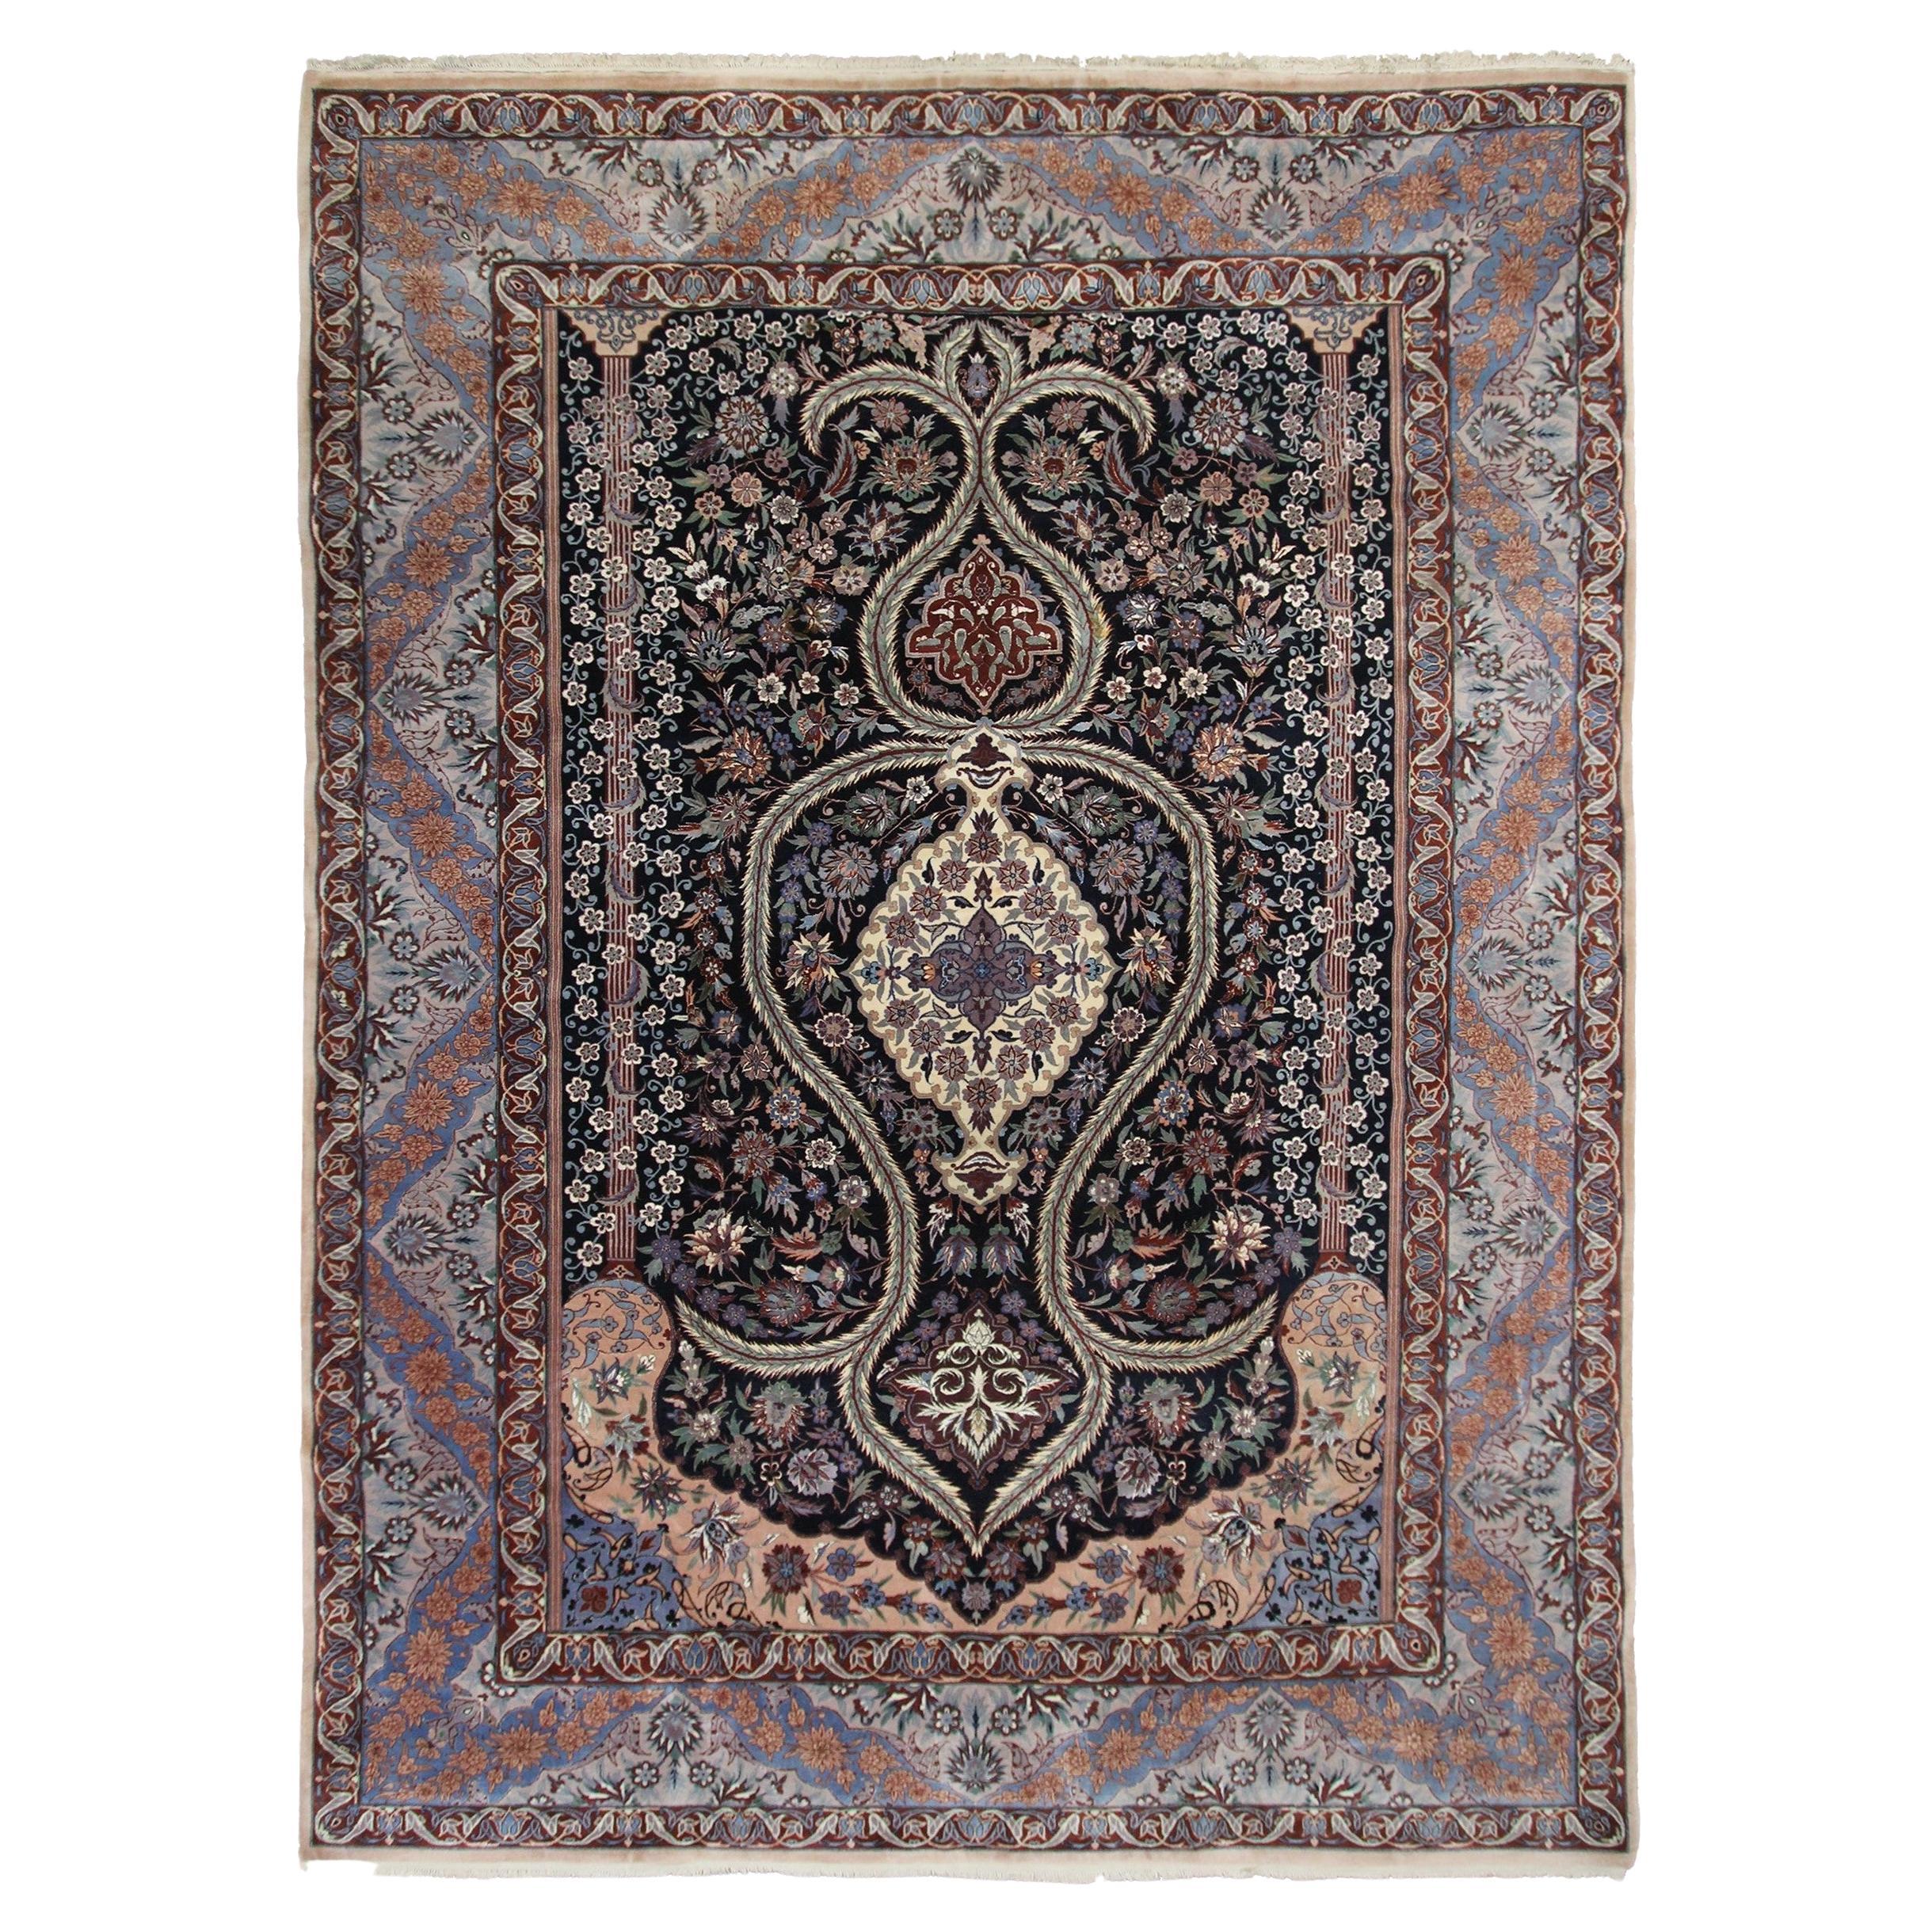 Persischer Esfahan-Teppich aus Wolle und Seide mit schwarzer Seiden Foundation, 8x11, handgefertigt